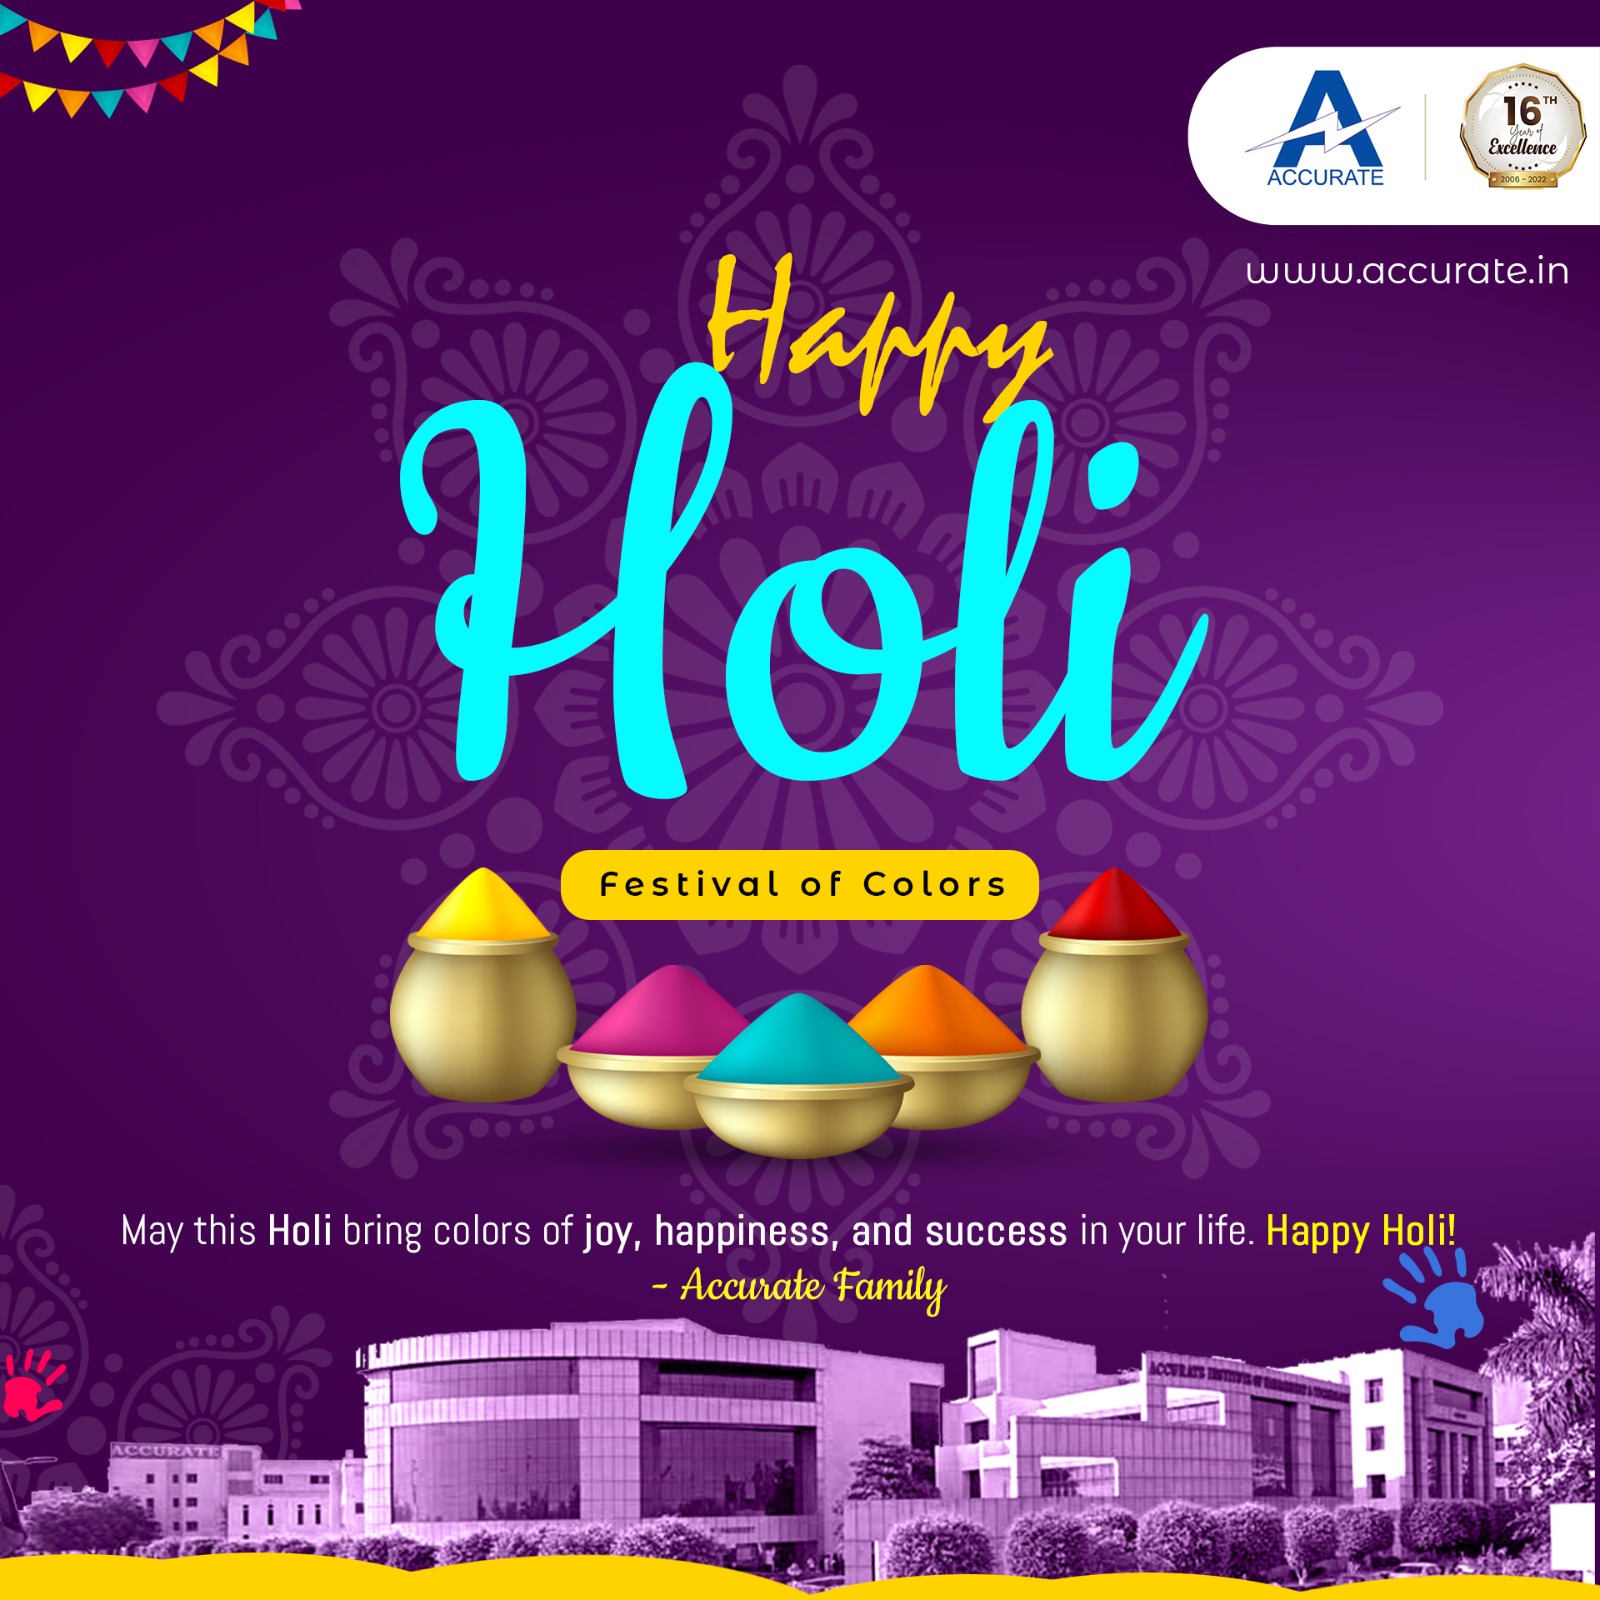 Holi: Celebrating Colors and Joy